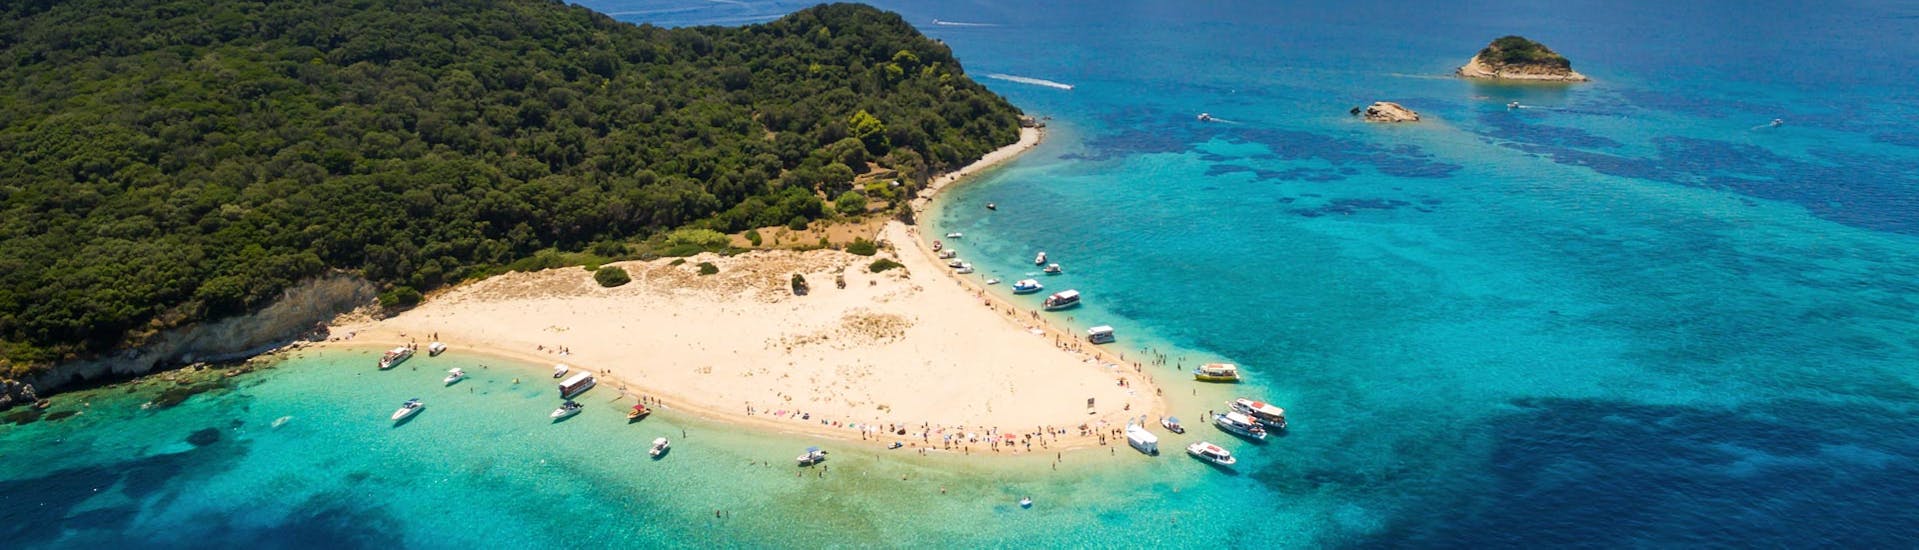 Turtle Island dat kan worden bezocht met bootverhuur in Keri (maximaal 6 personen) met Fun@Sea Zakynthos.